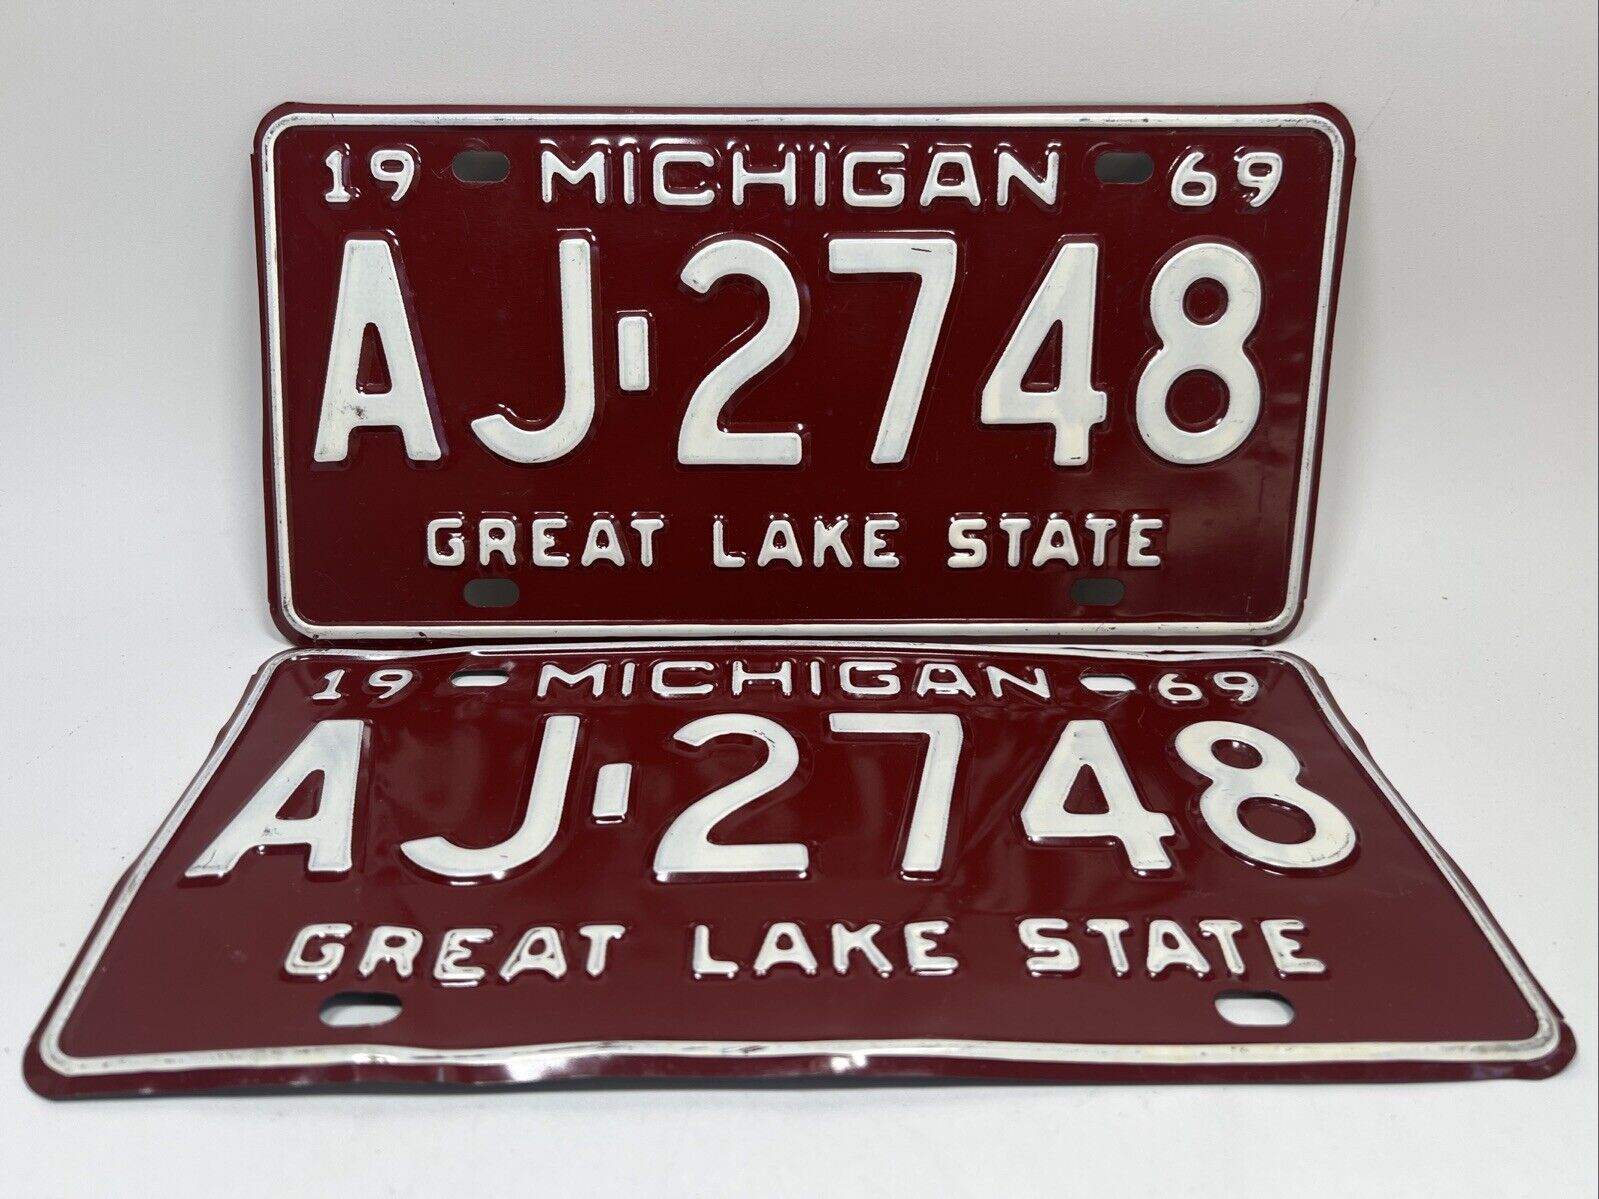 Vintage 1969 MICHIGAN License Plate Set Pair Matching Great Lakes State AJ-2748